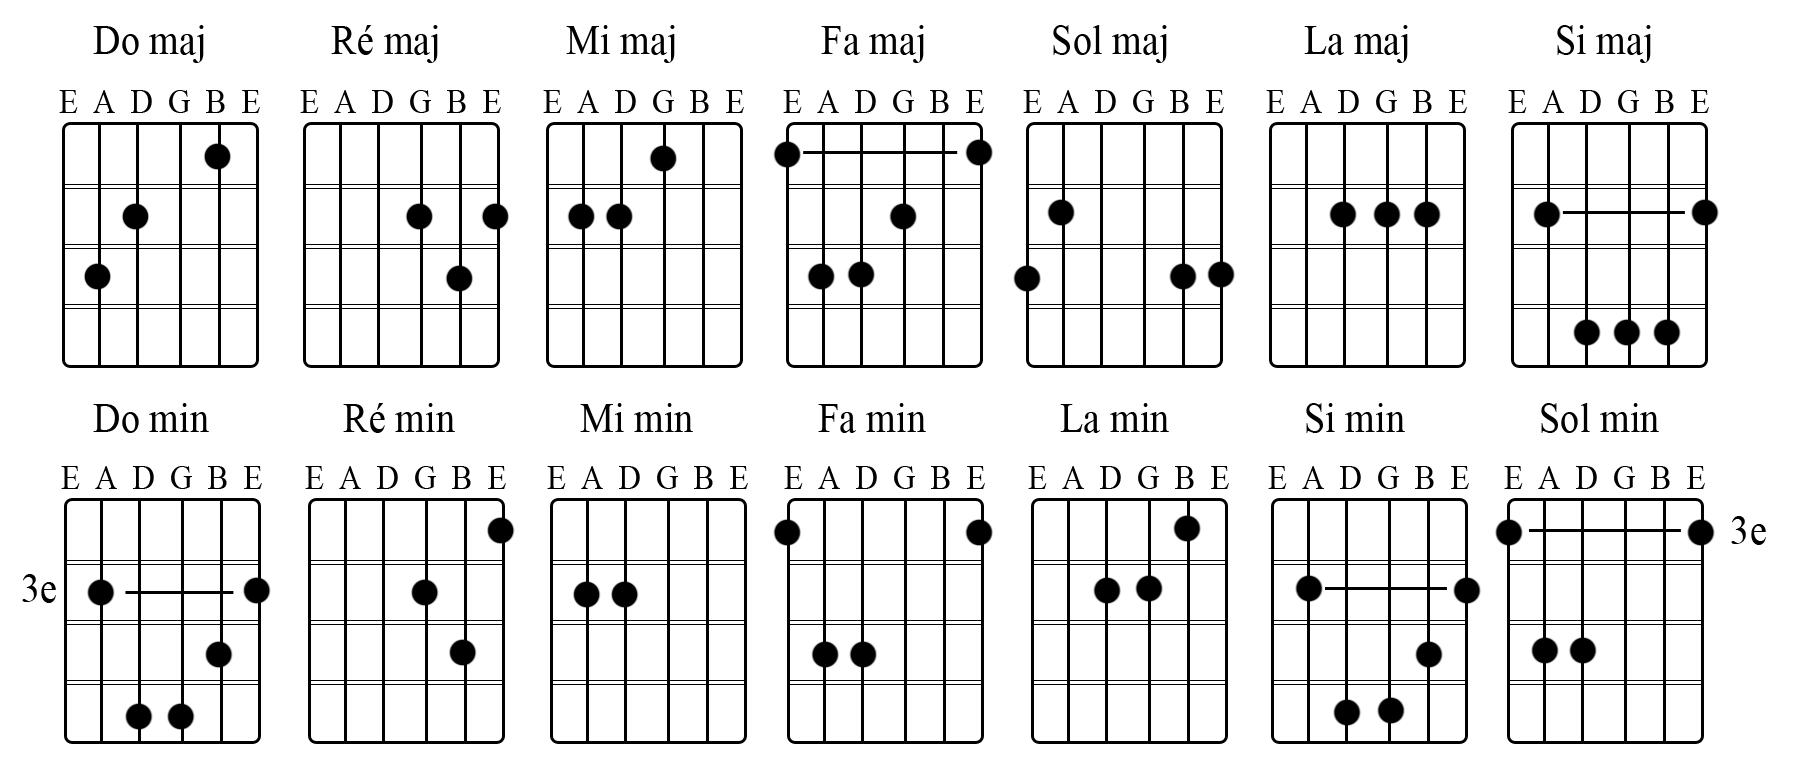 Аккорды для гитары. Схемы аккордов 6 струнной гитары. Схемы гитарных аккордов для начинающих гитаристов. Схема основных аккордов для шестиструнной гитары. Схема аккордов на гитаре 6 струн.